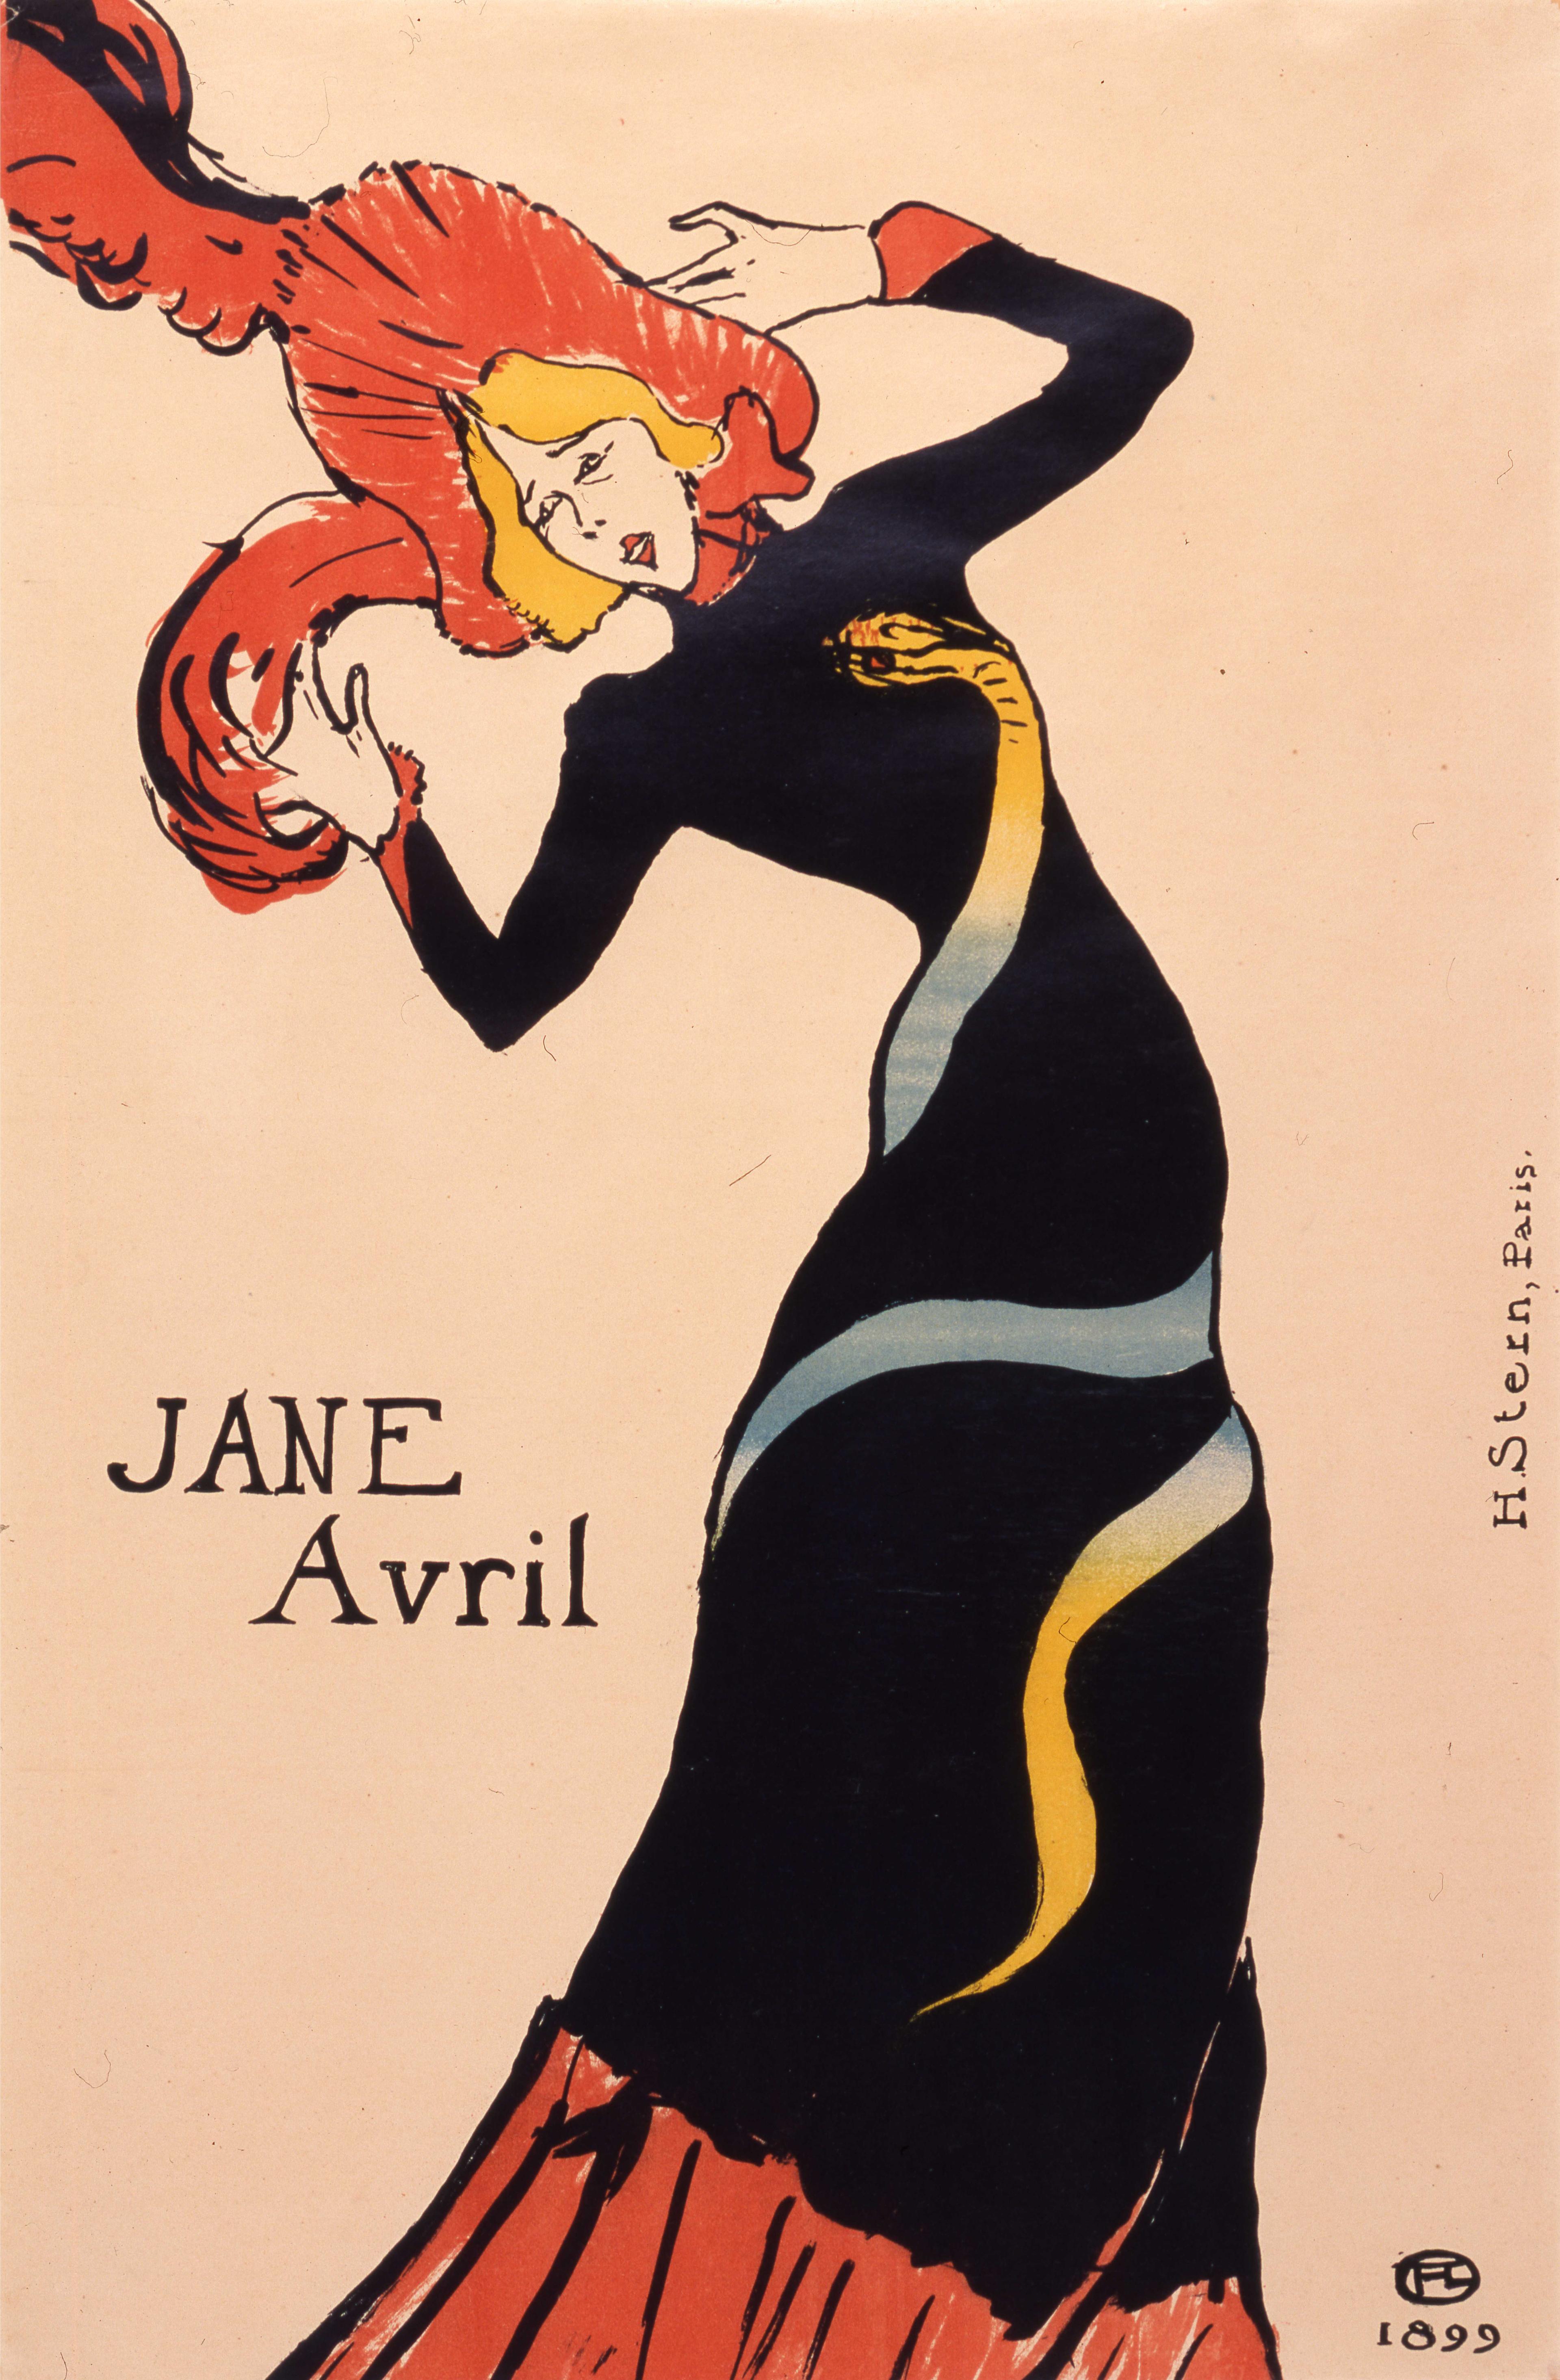 Jane Avril, dancing in black dress